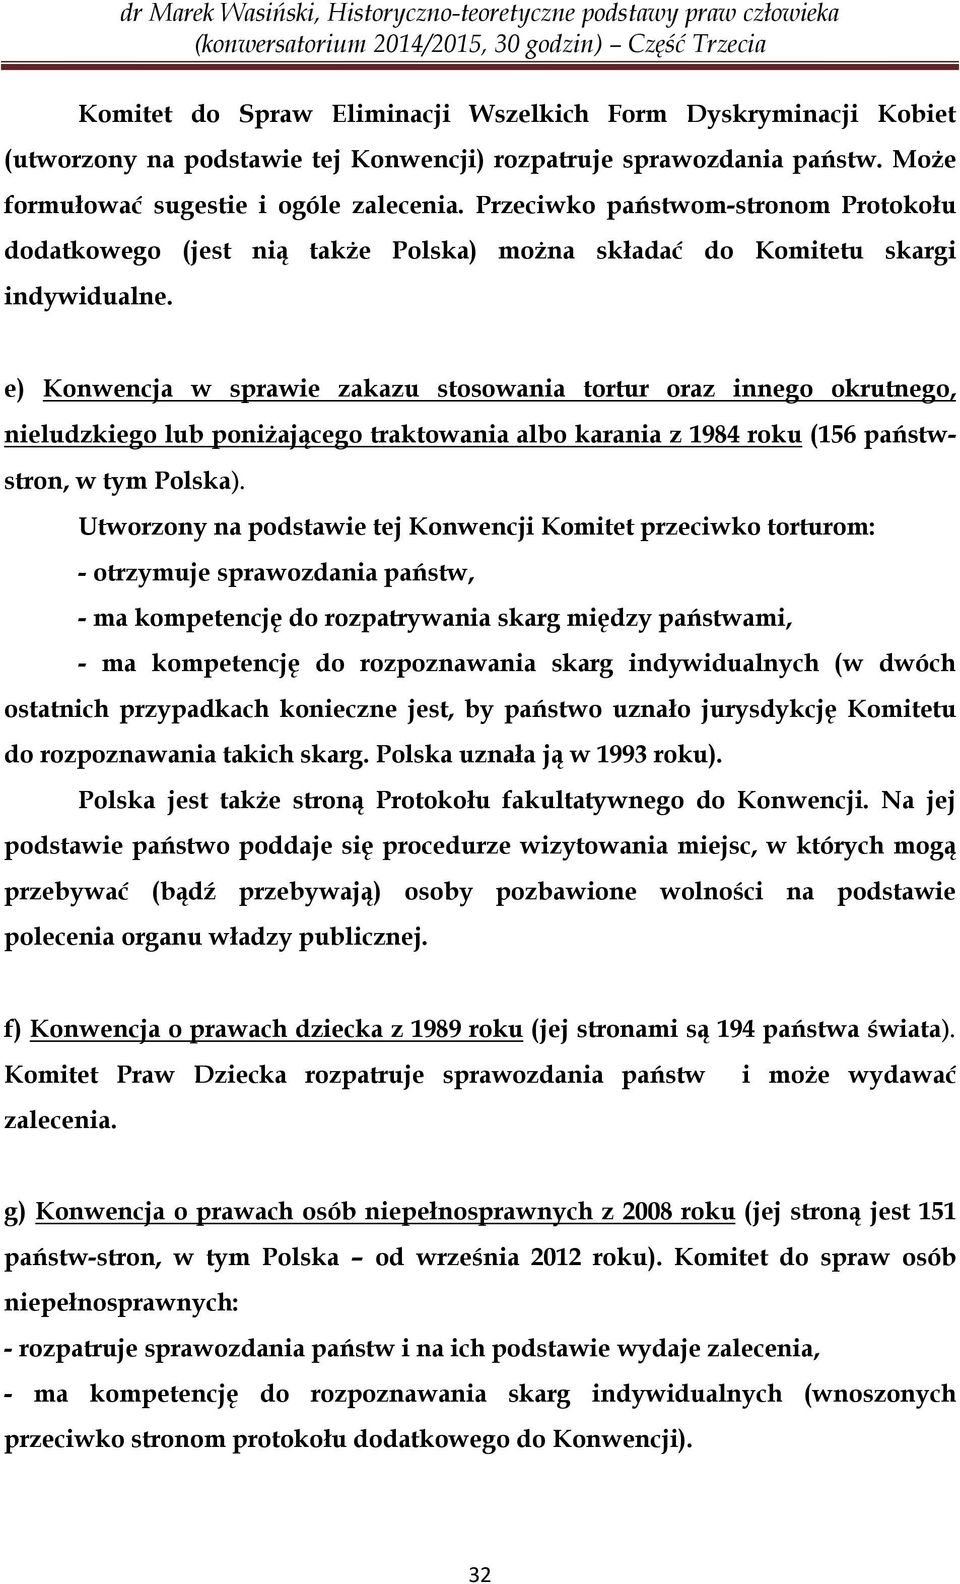 e) Konwencja w sprawie zakazu stosowania tortur oraz innego okrutnego, nieludzkiego lub poniżającego traktowania albo karania z 1984 roku (156 państwstron, w tym Polska).